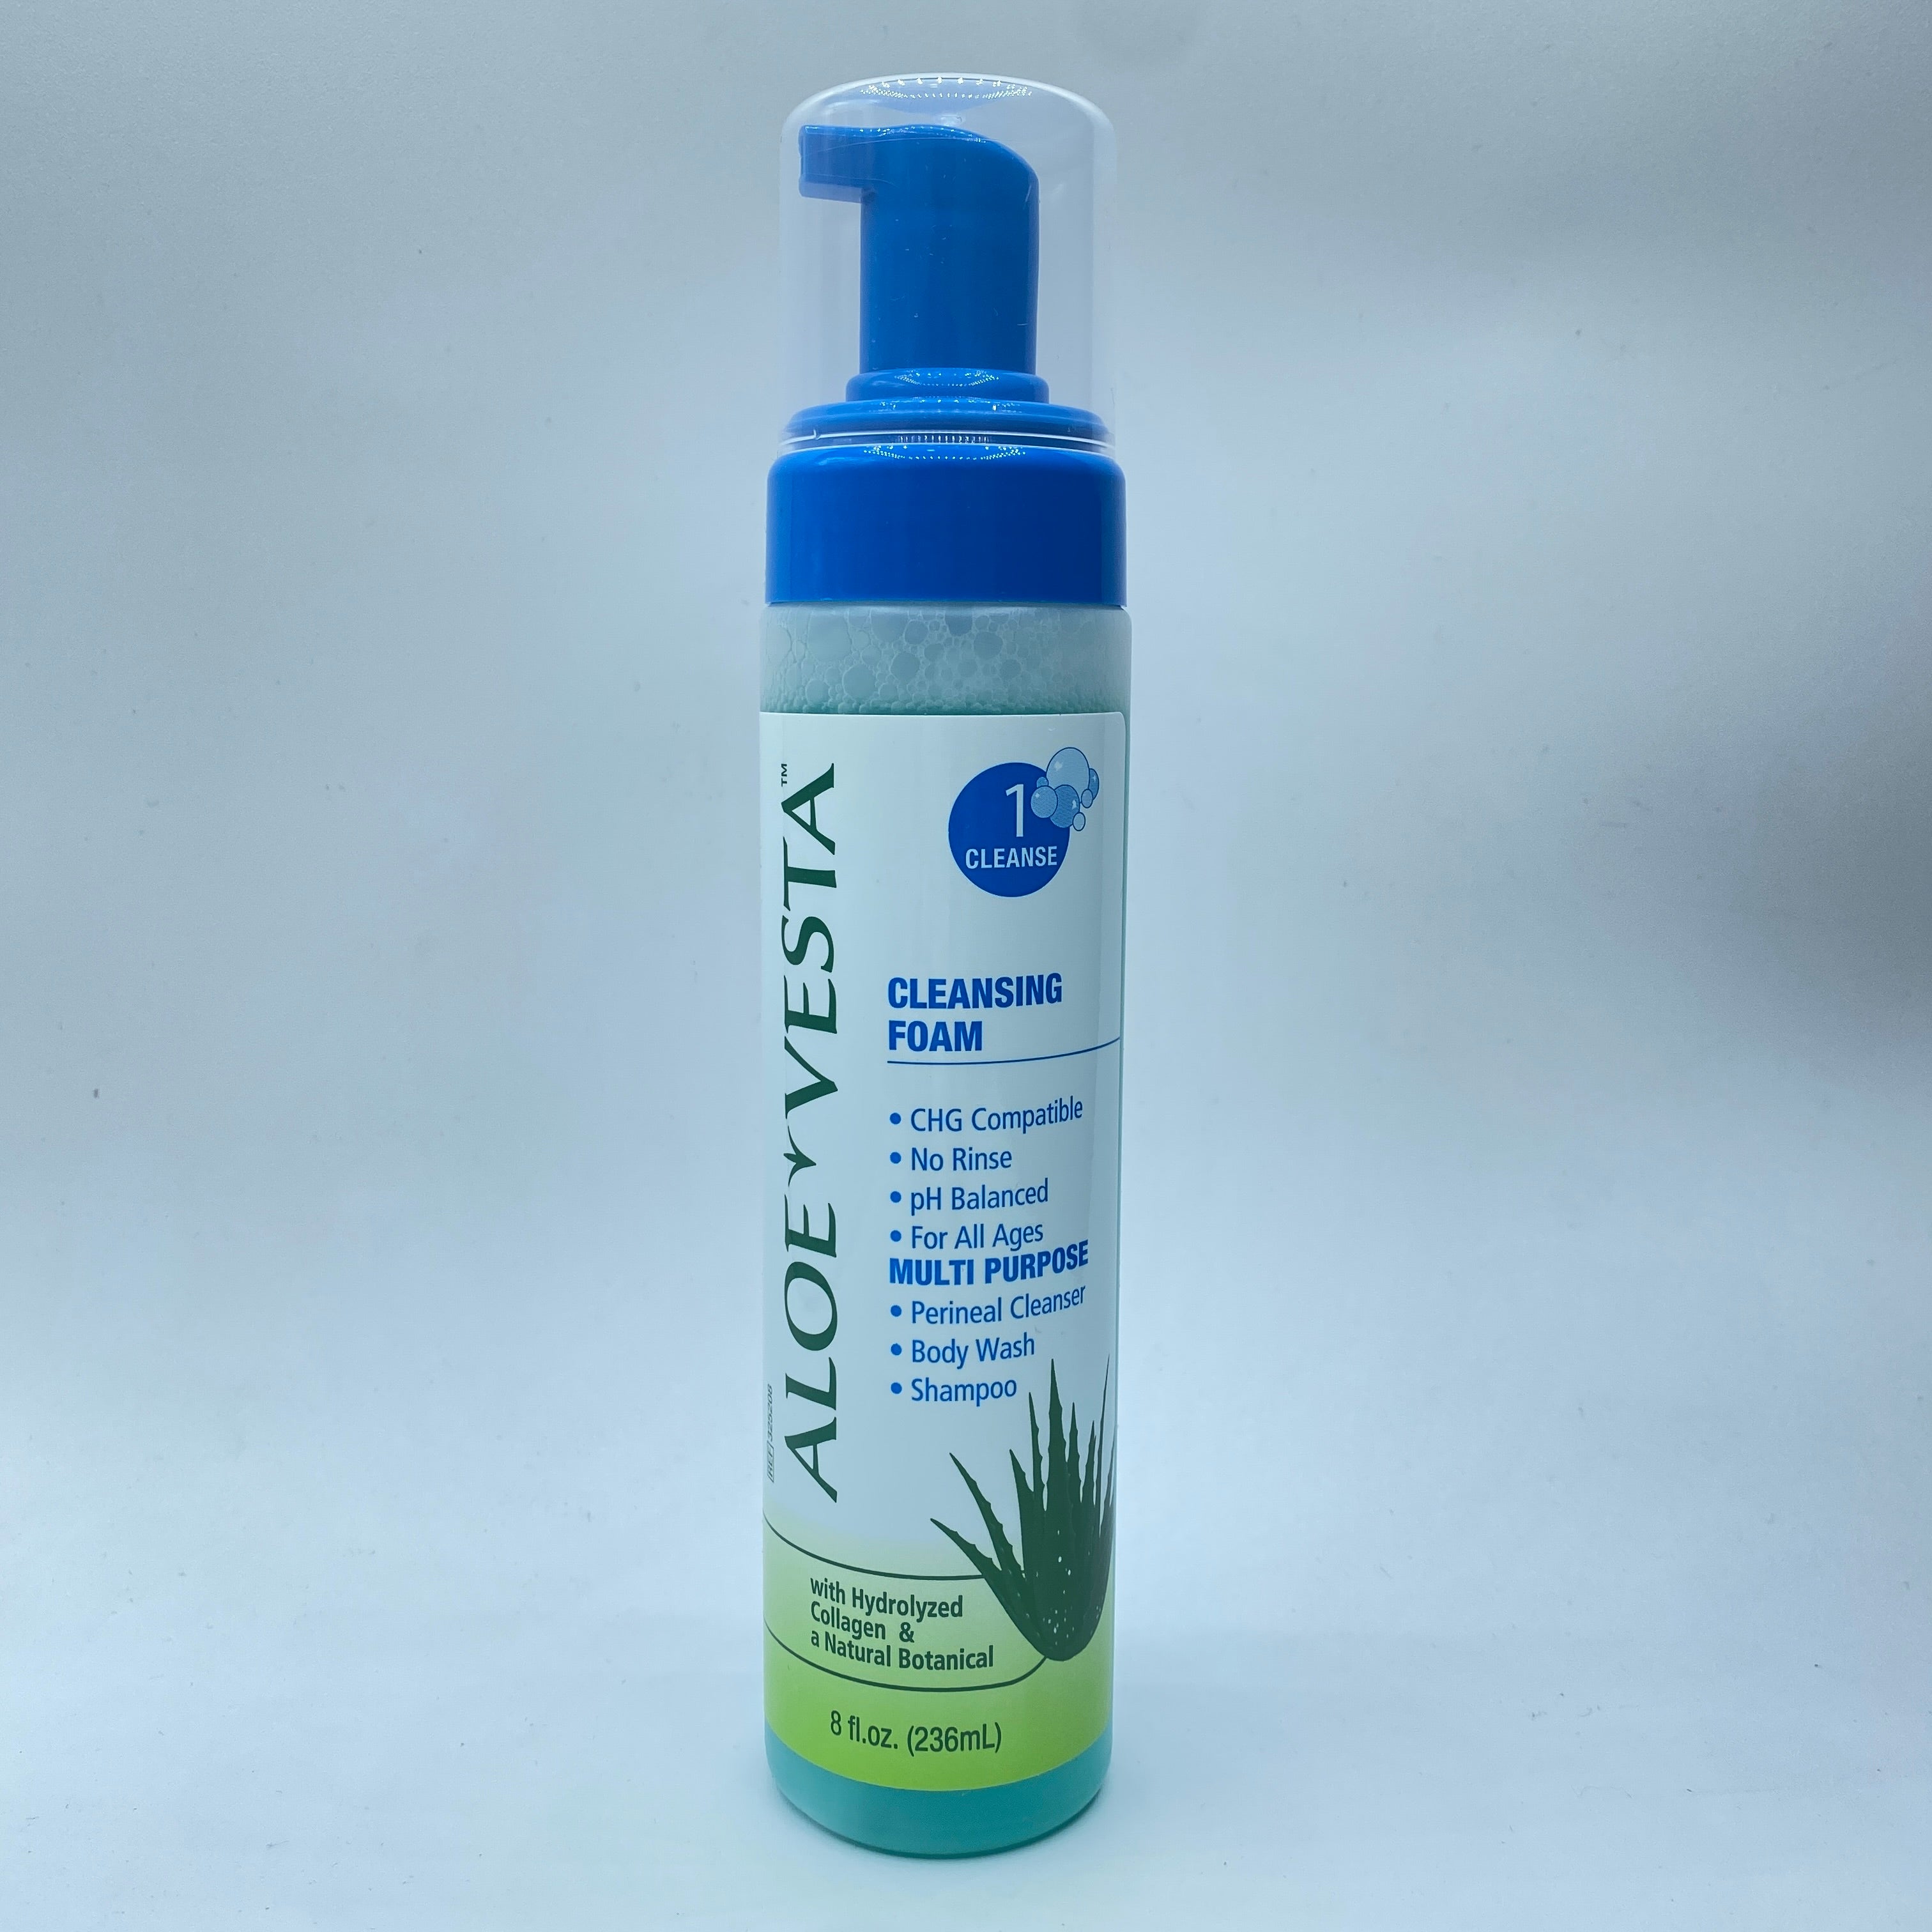 *Aloe Vesta 325208 Skin Cleansing Foam 8 oz Bottle